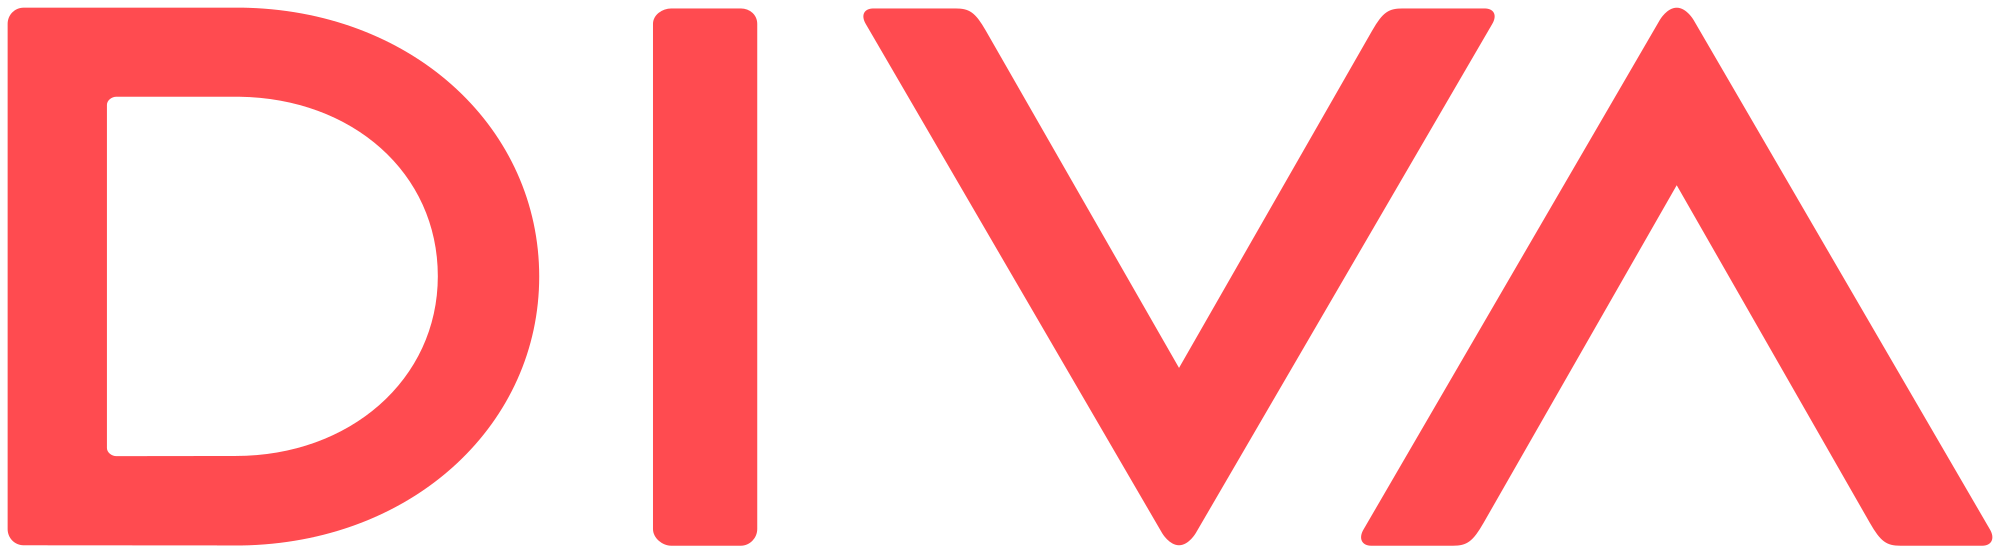 Diva Logo - Diva logo.svg